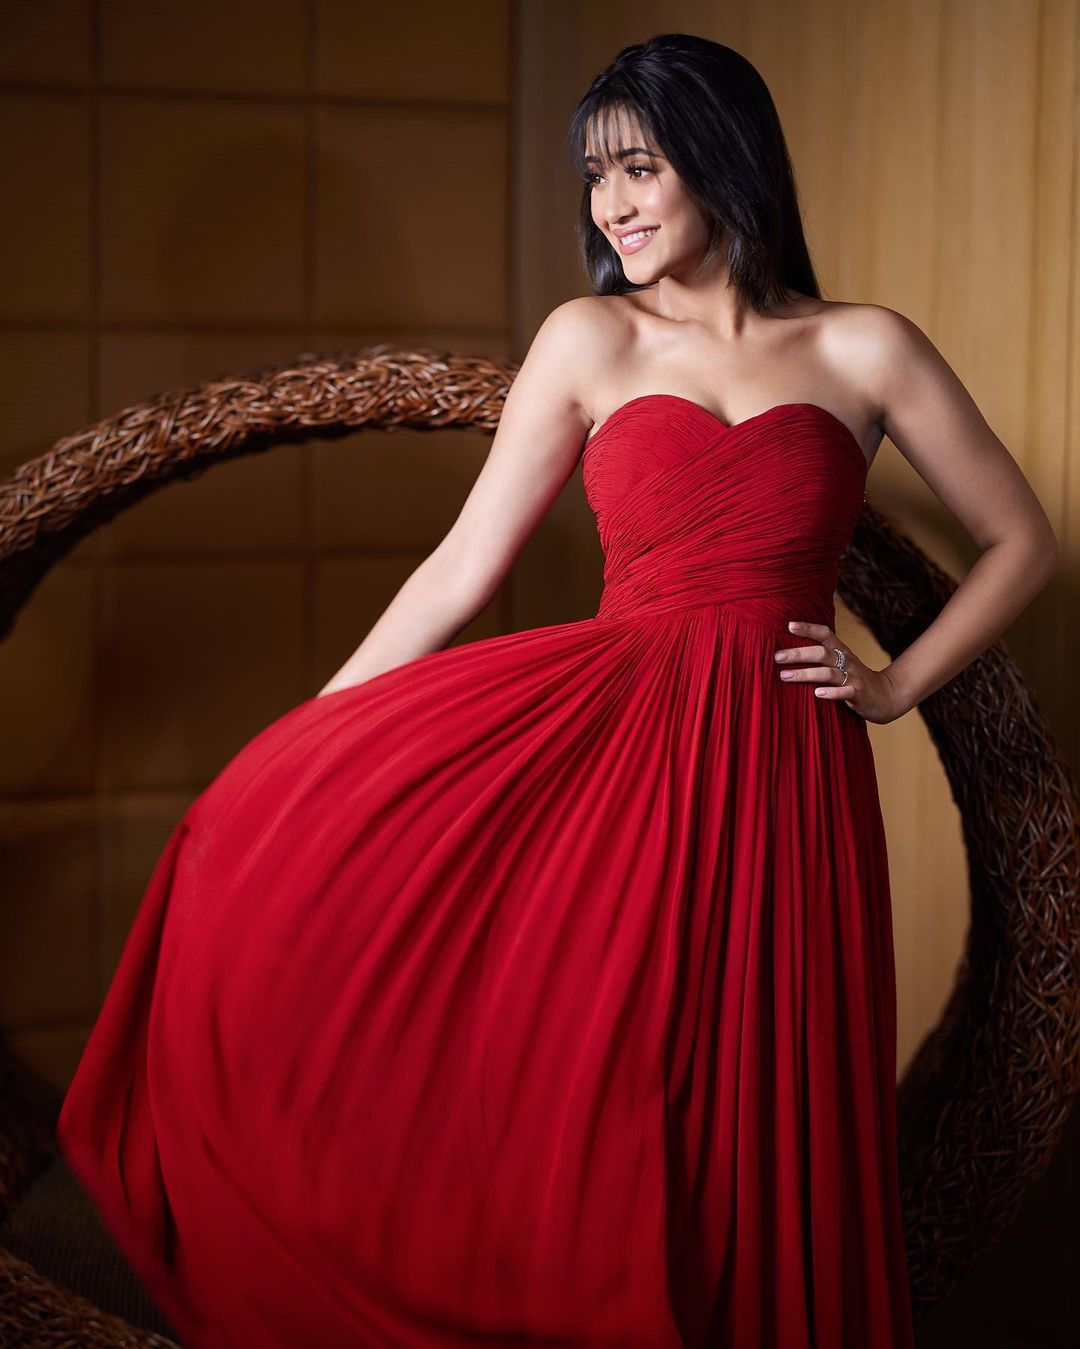 Styling Tips From Shivangi Joshi For a Stunning Wedding Wardrobe